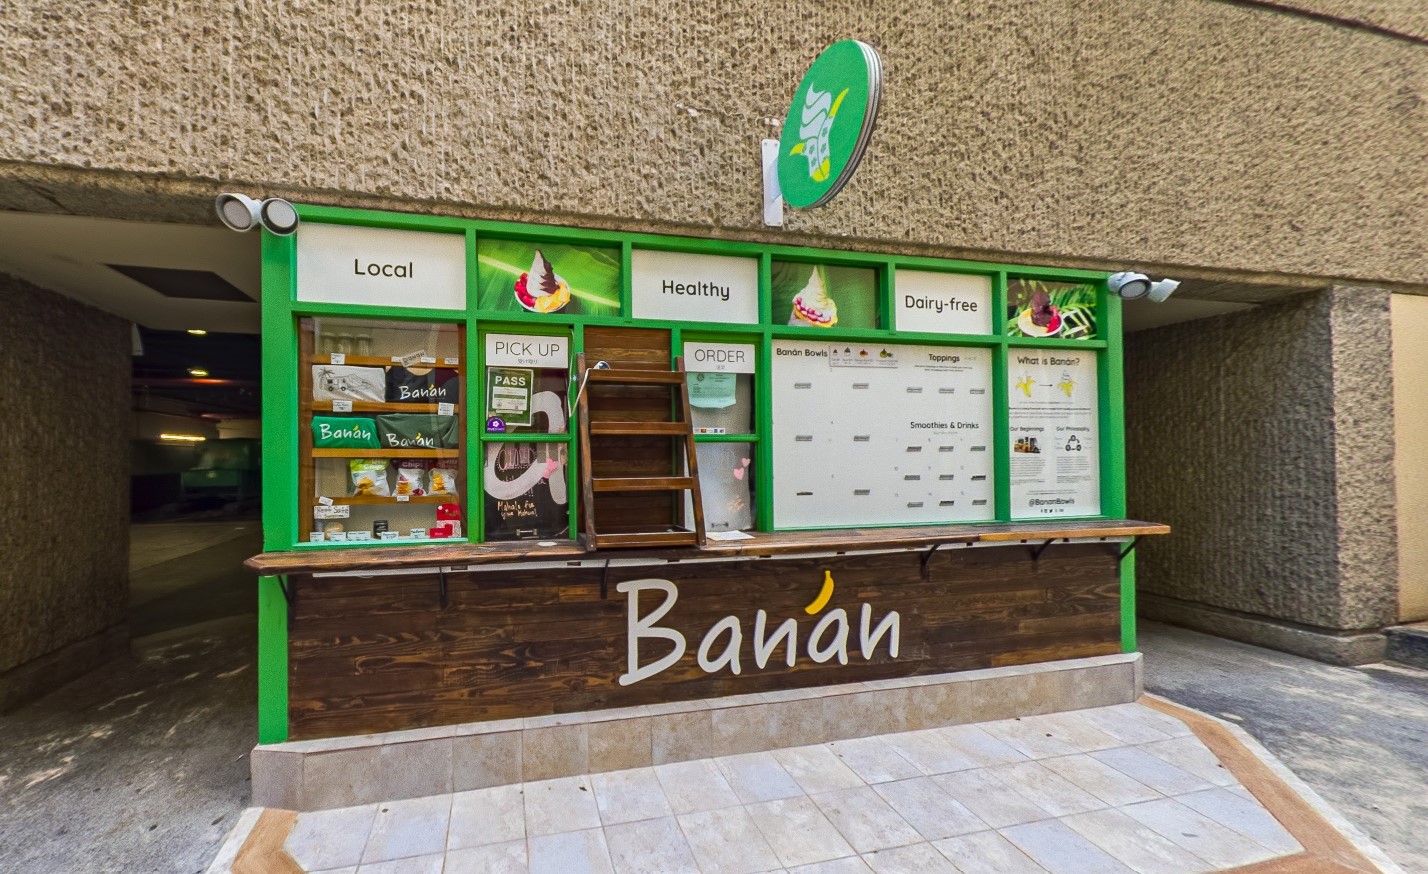 夏威夷软冰淇淋店Banan将在旧金山开业